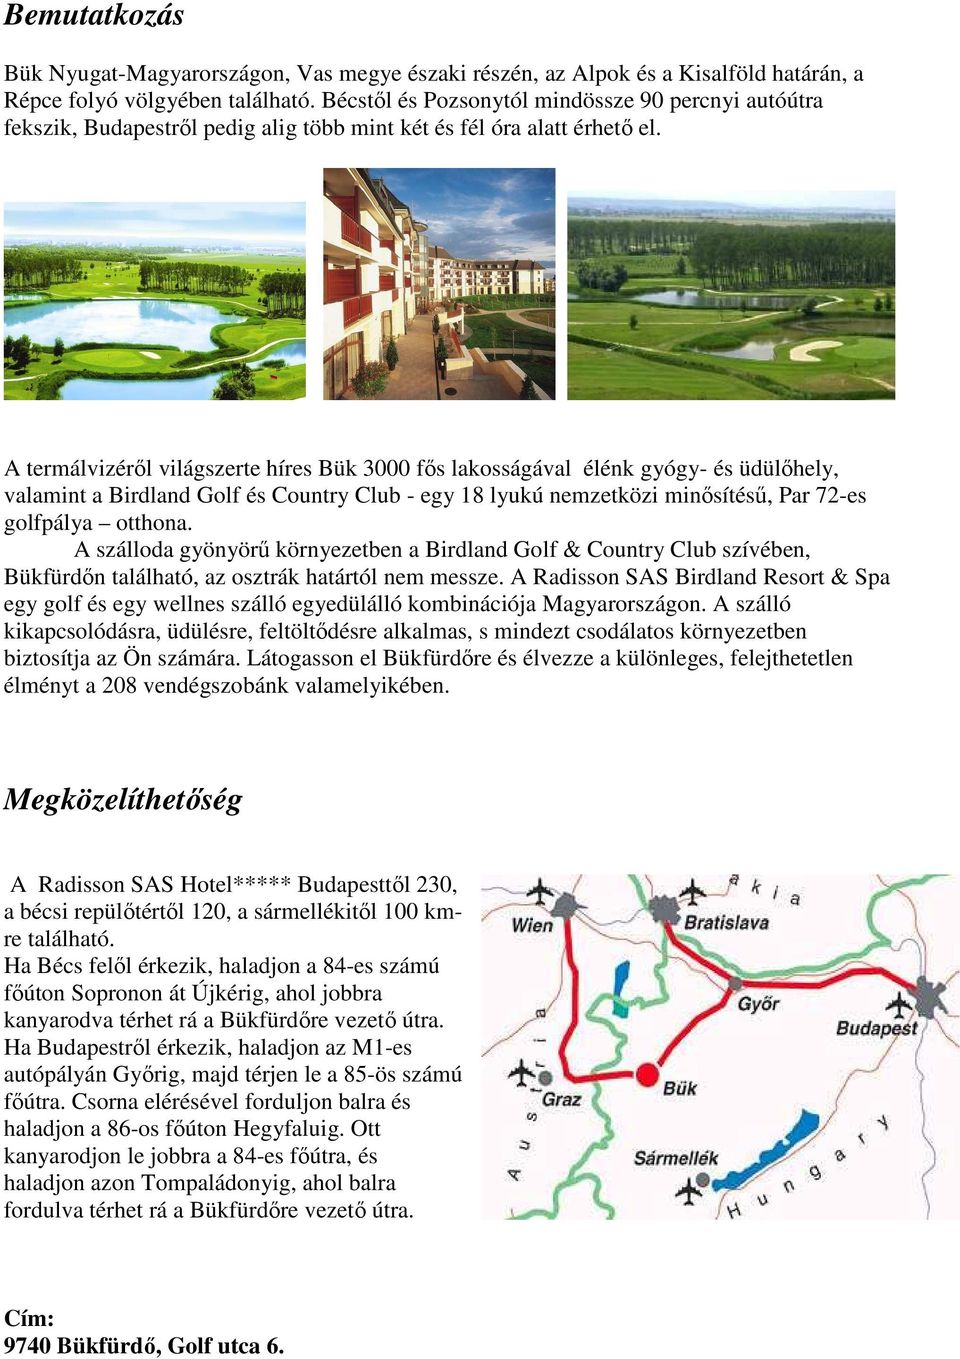 A termálvizérıl világszerte híres Bük 3000 fıs lakosságával élénk gyógy- és üdülıhely, valamint a Birdland Golf és Country Club - egy 18 lyukú nemzetközi minısítéső, Par 72-es golfpálya otthona.